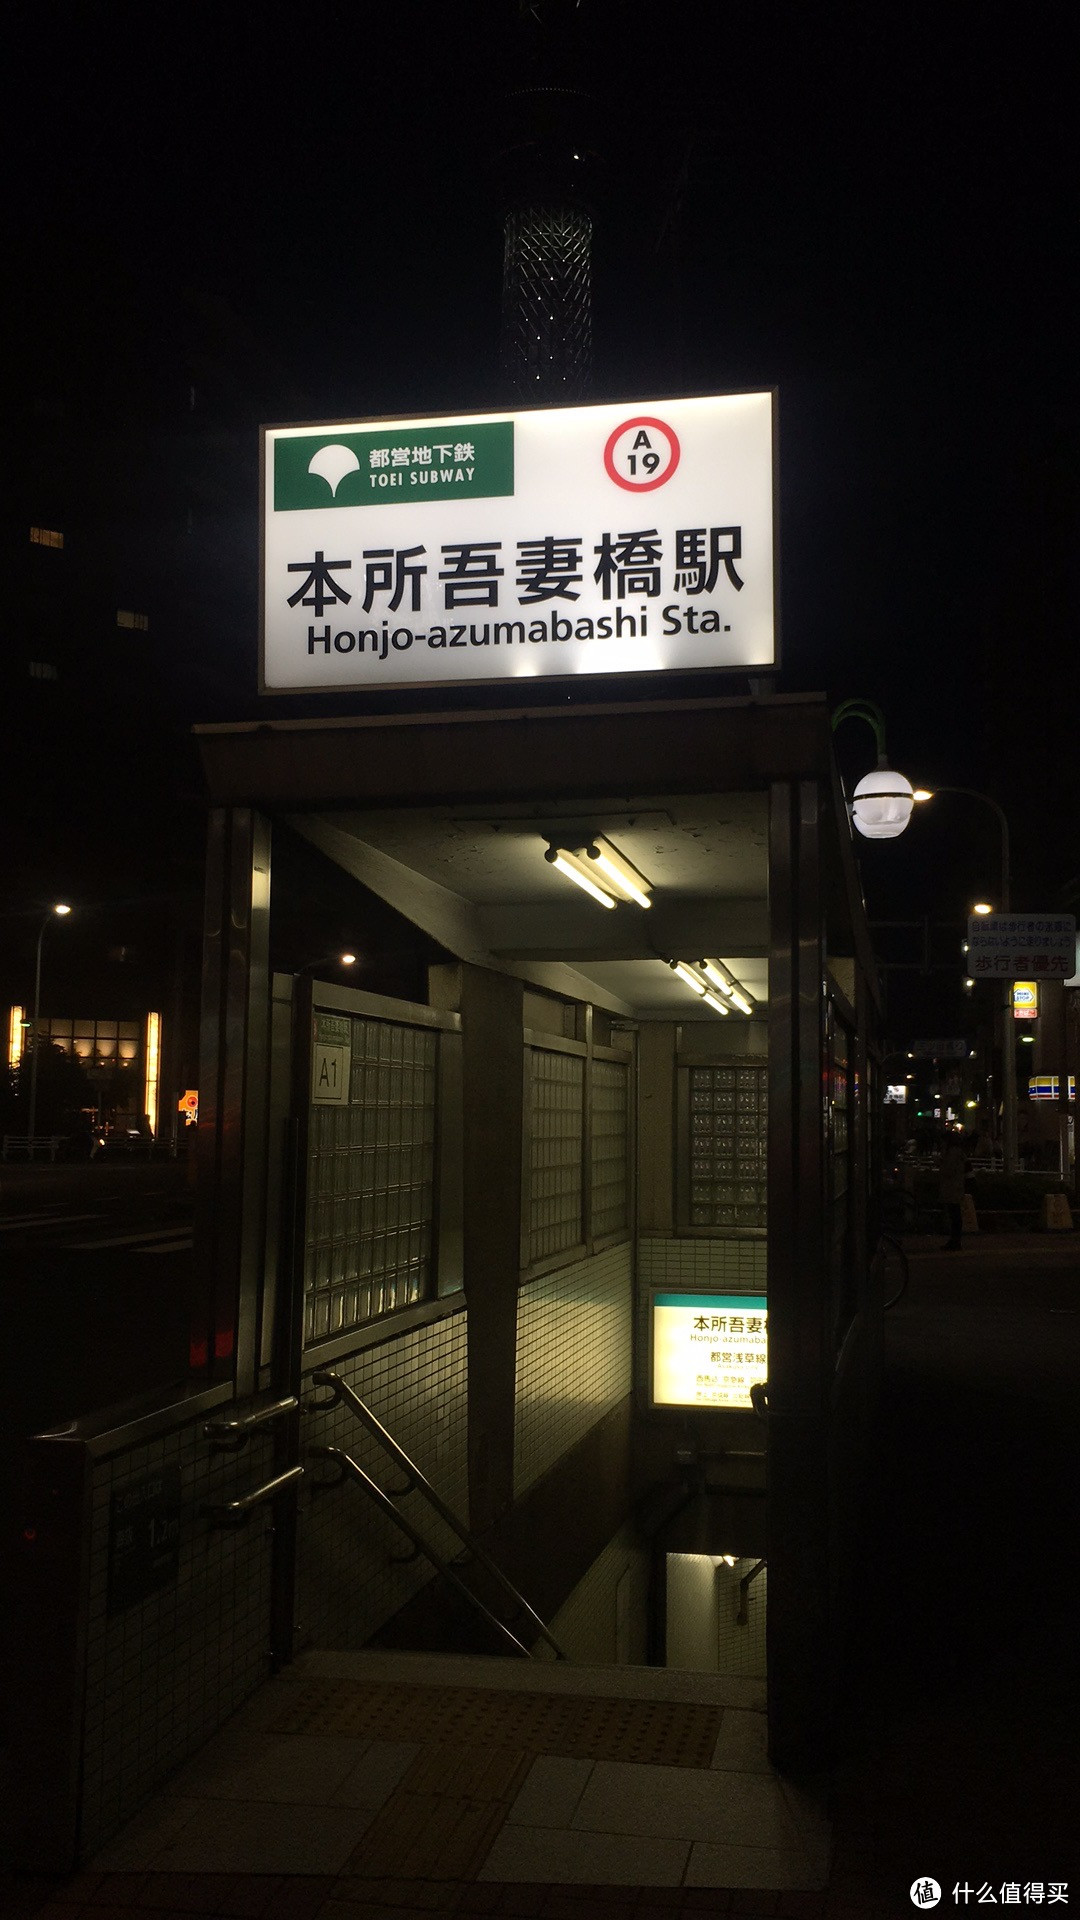 离开酒店步行2分钟即最近的地铁站本所吾妻桥站